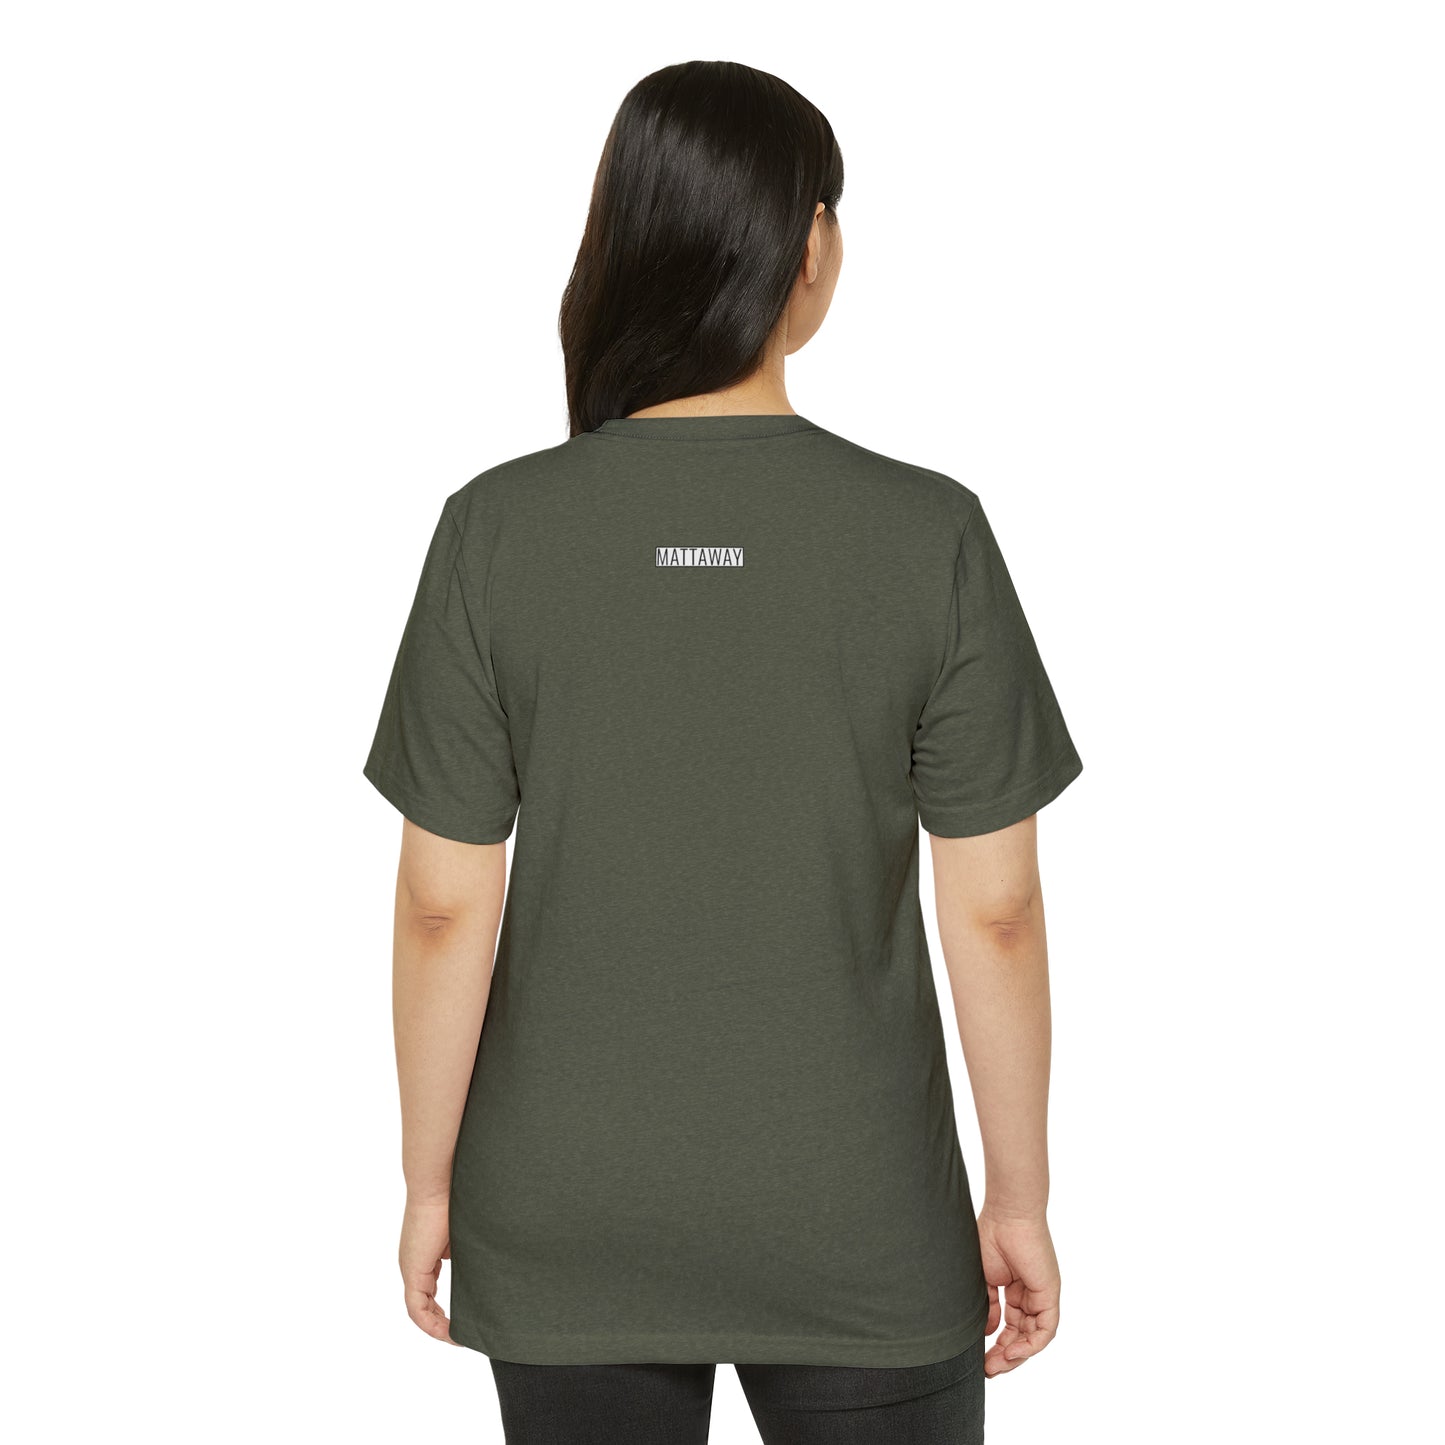 MINIMAL SHAPES 105 - Unisex Recycled Organic T-Shirt